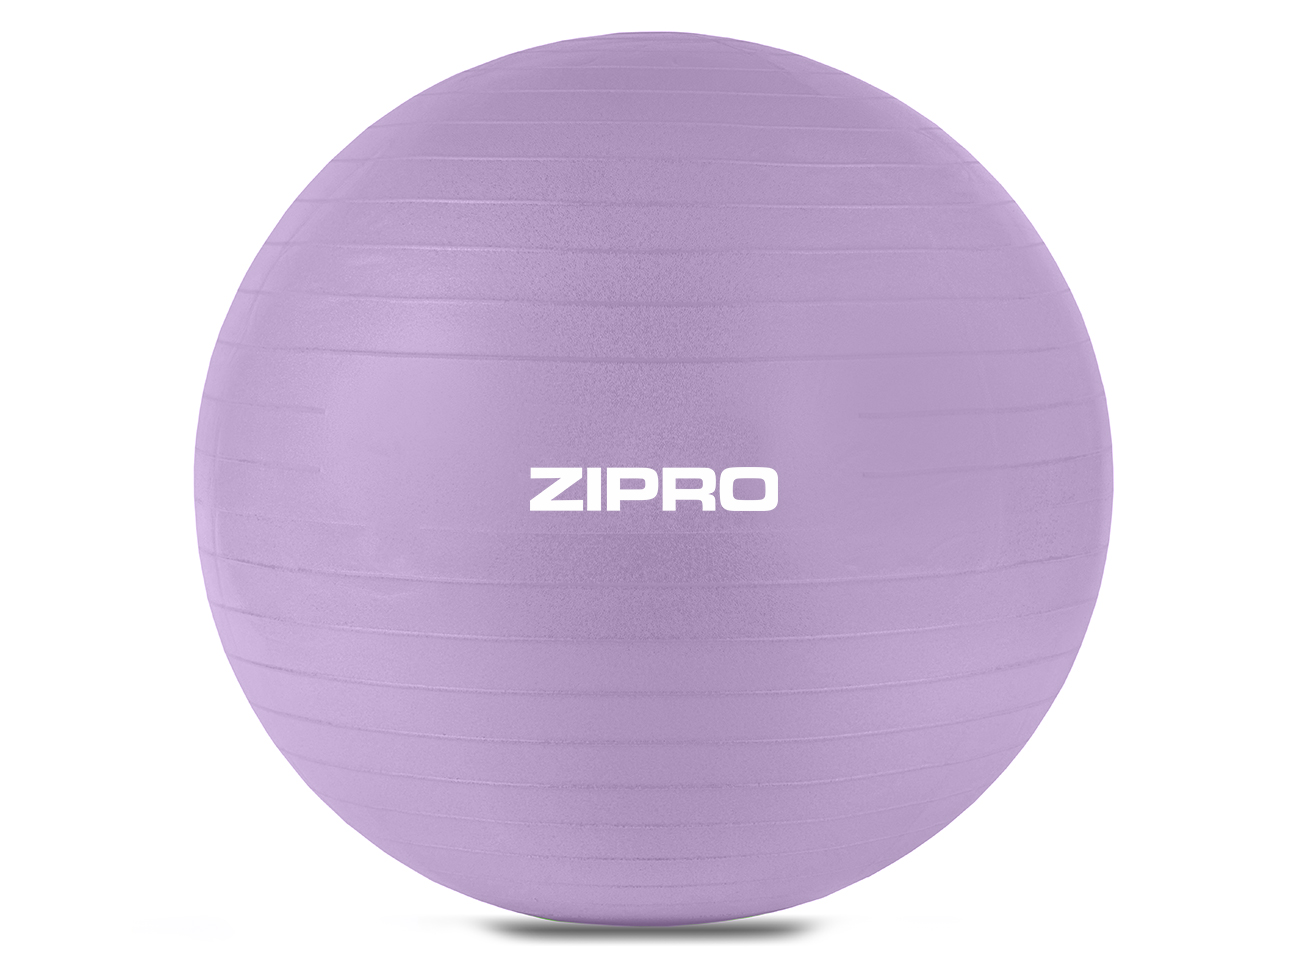 ZIPRO fitness ball